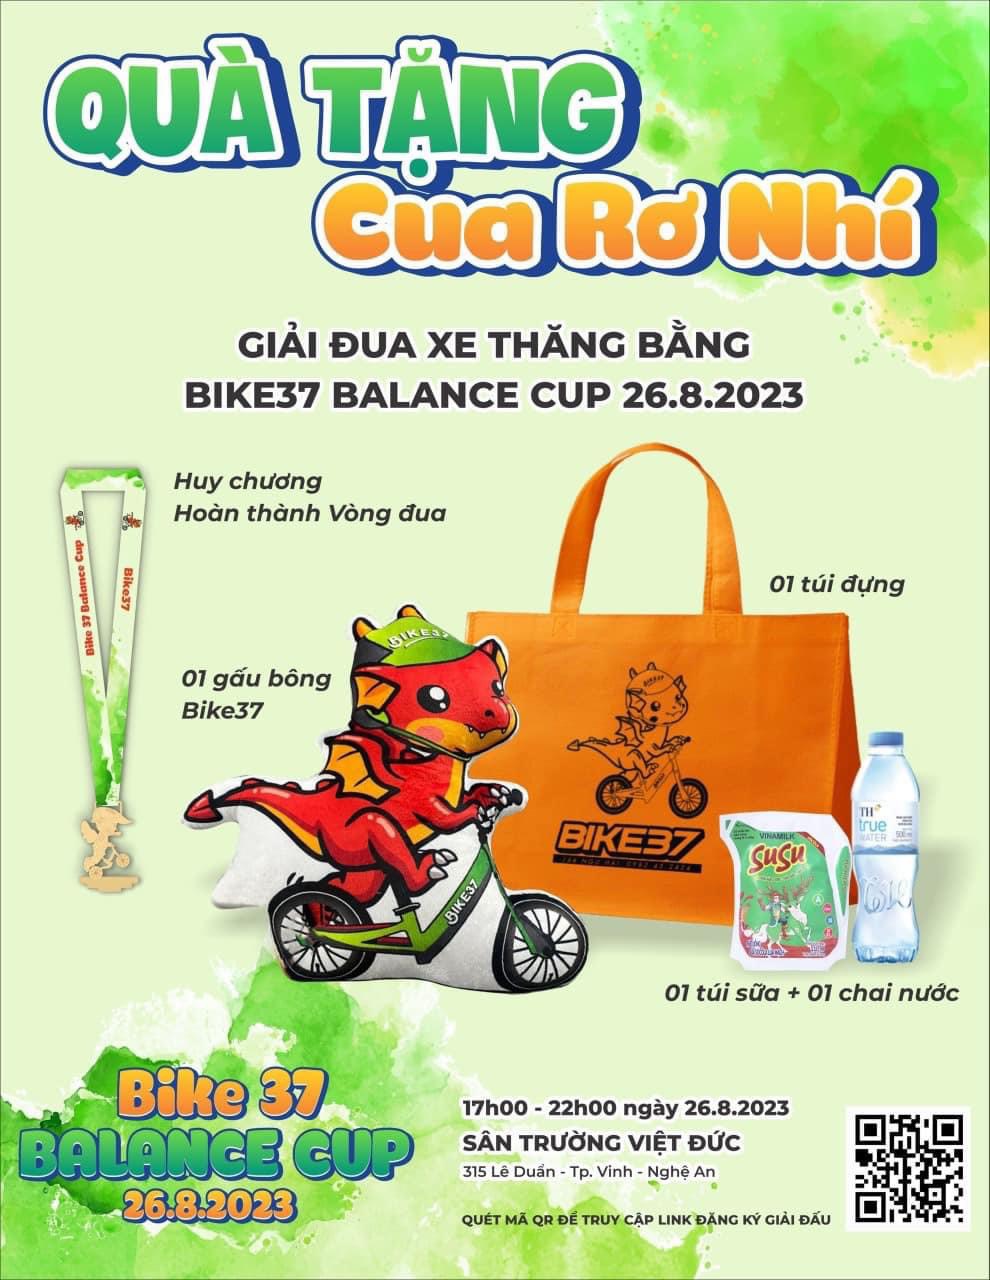 Poster quảng cáo giải đua xe đạp thiếu nhi tại Trường Cao đẳng Việt Đức Nghệ An không có đơn vị tổ chức. Ảnh: Hải Đăng 